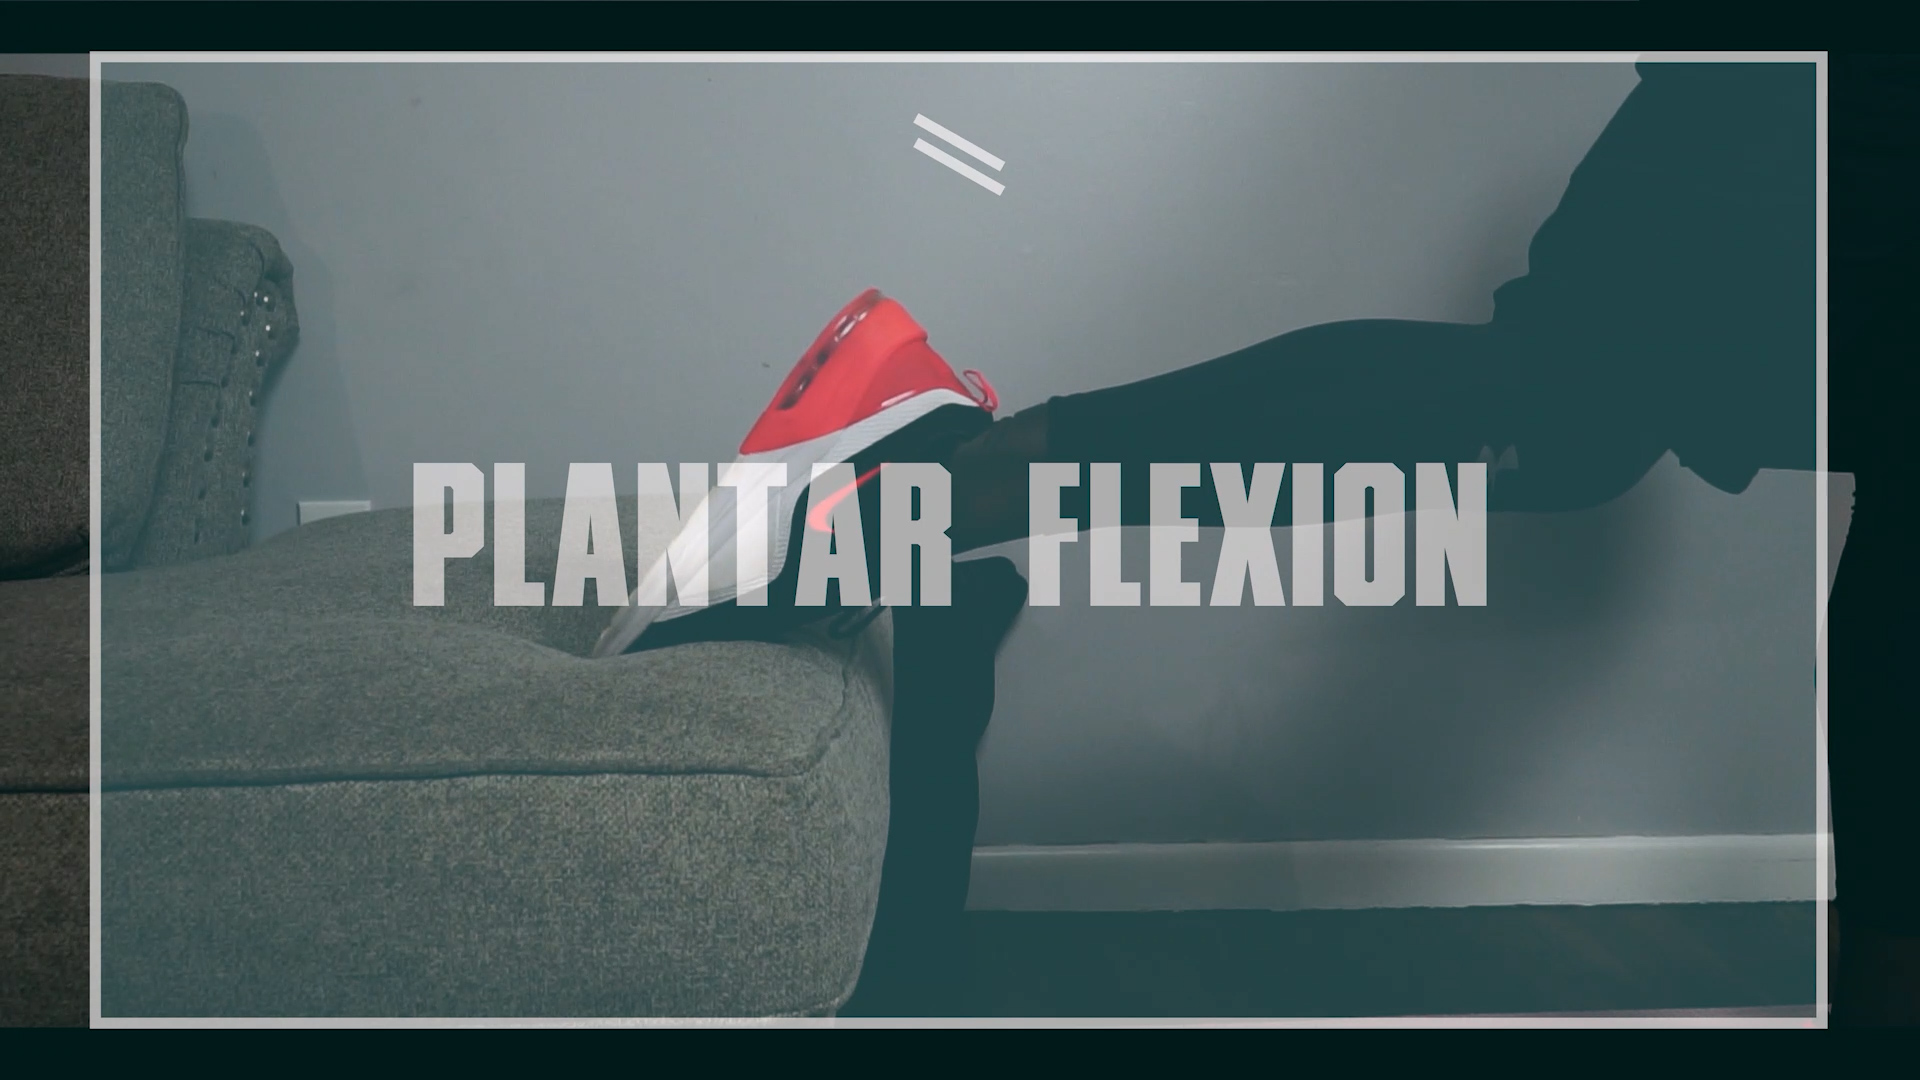 legs dumbbell workout plantar flexion during split squat